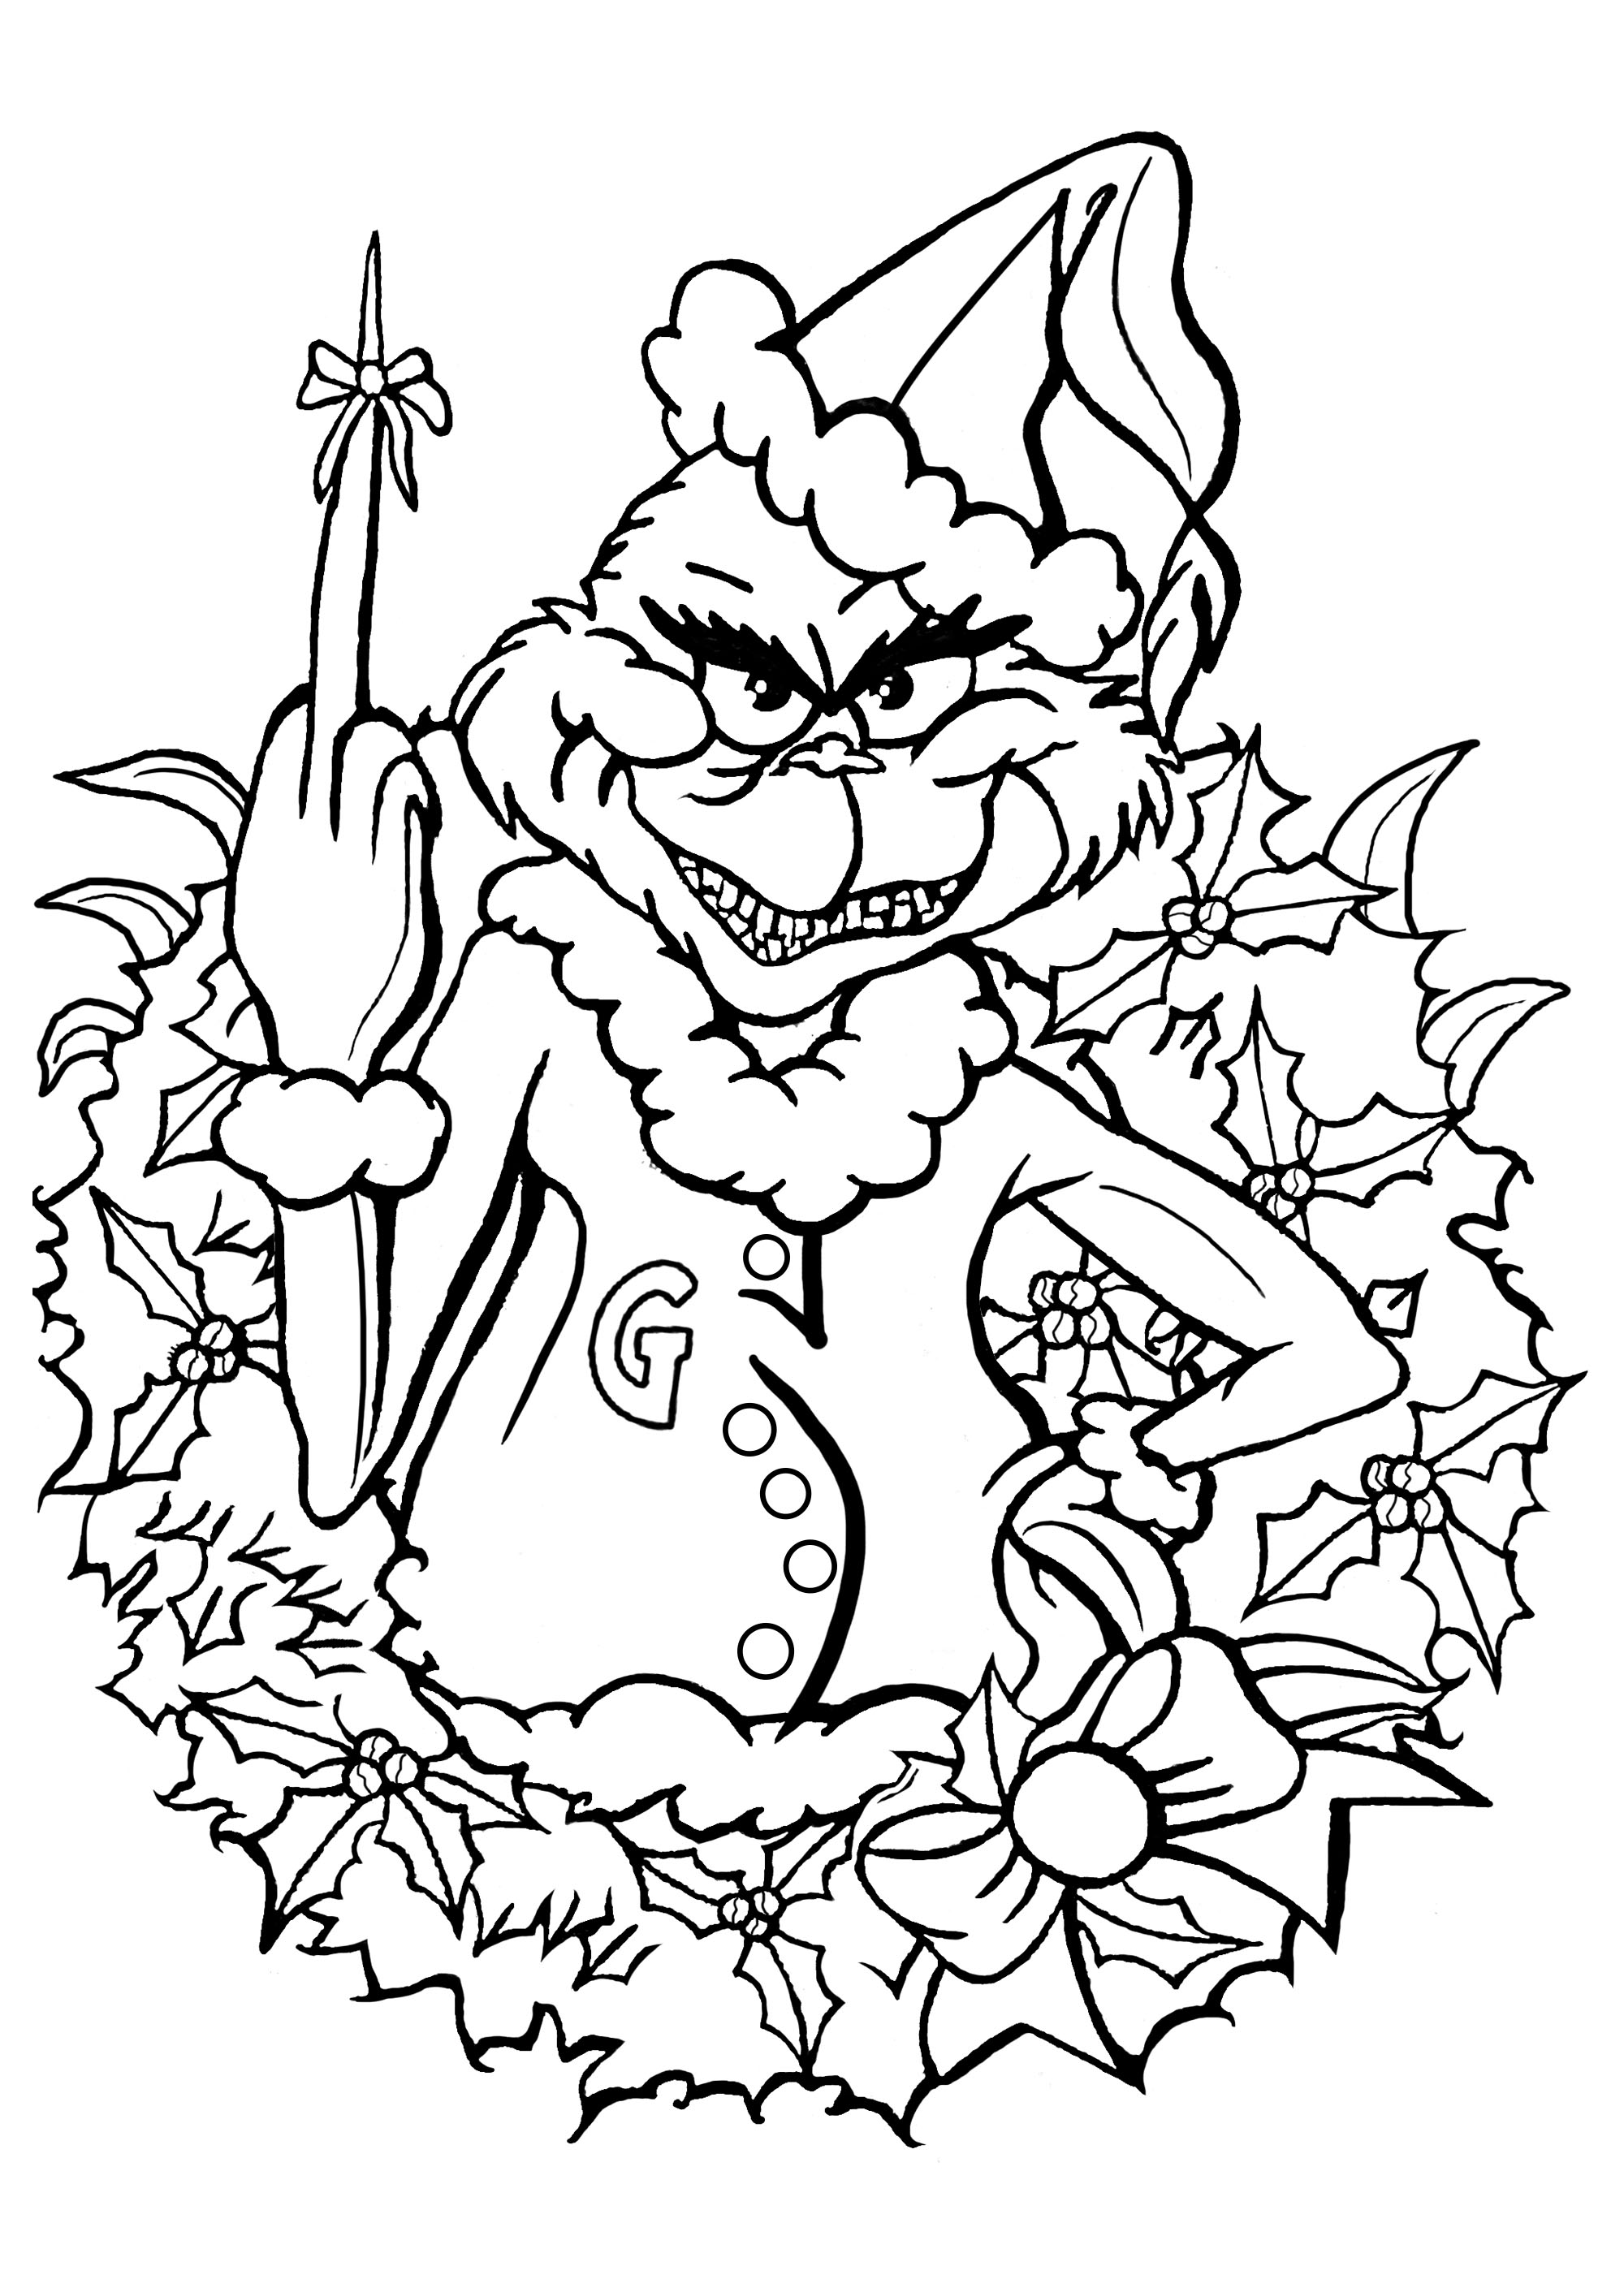 Festeggiate il Natale con il Grinch! Ha un piccolo regalo per voi ... Il Grinch è un personaggio immaginario creato dal Dr. Seuss. È verde e peloso. È conosciuto come il protagonista del libro per bambini Come il Grinch rubò il Natale! (1957). Appare anche in un film con Jim Carrey (2000) e in un film natalizio animato al computer prodotto da Illumination (2008), Artista : Art'Isabelle